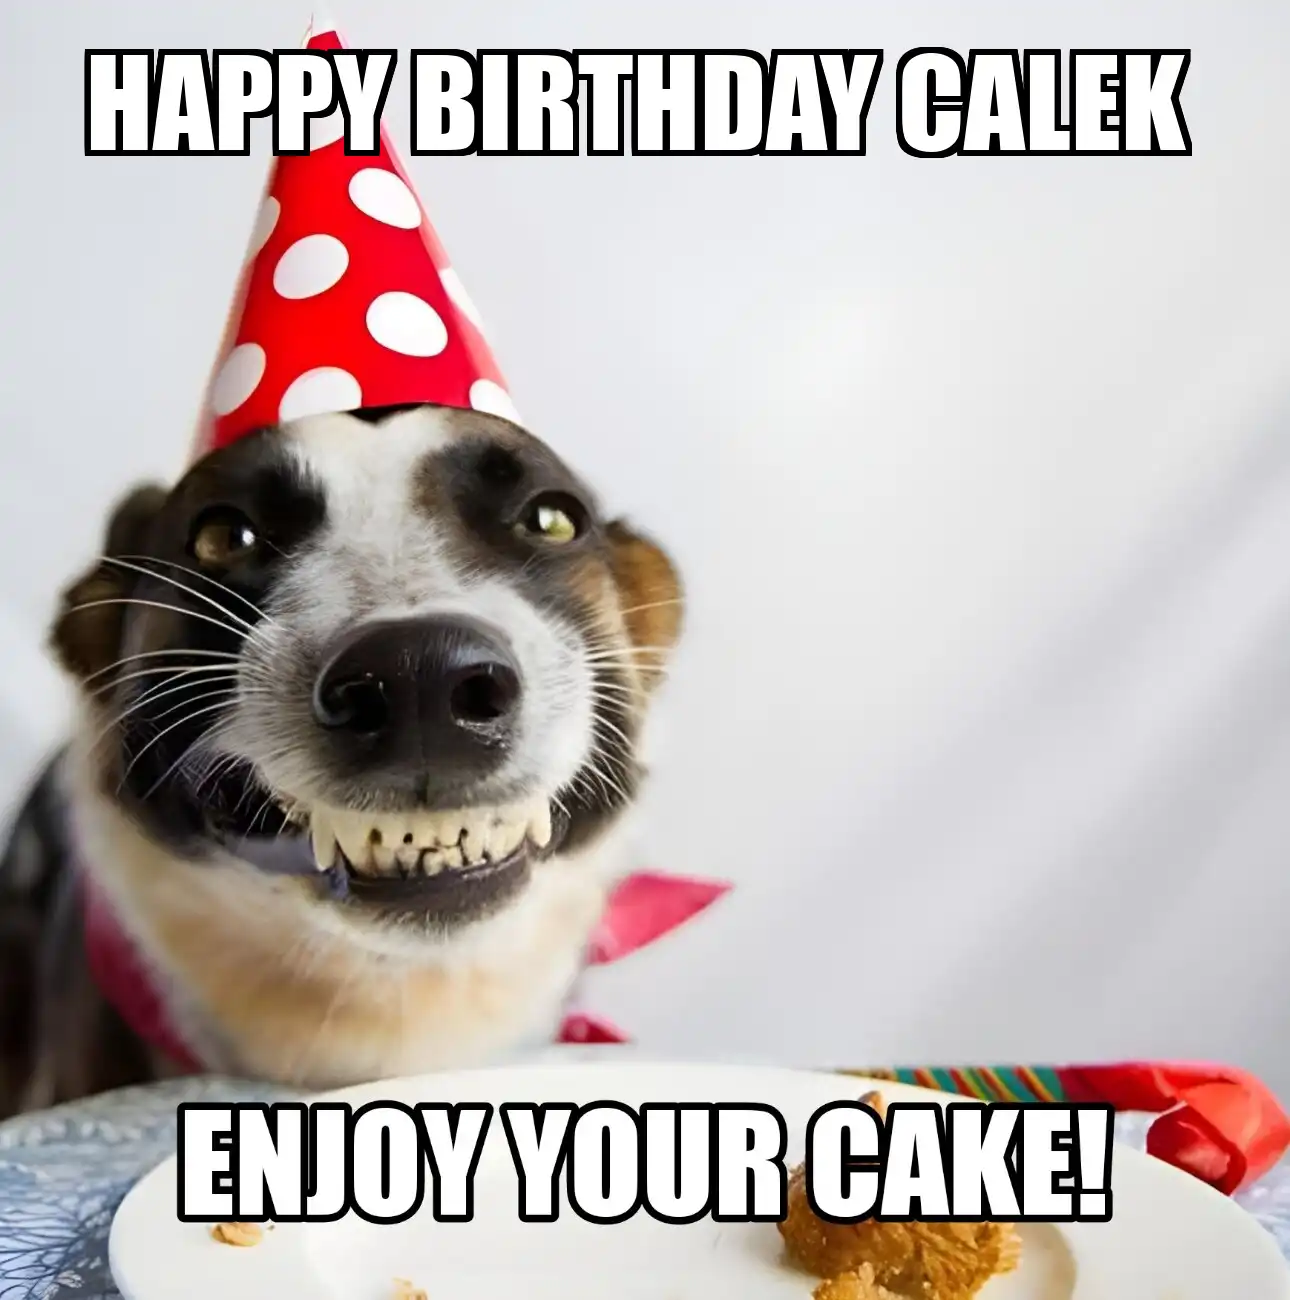 Happy Birthday Calek Enjoy Your Cake Dog Meme